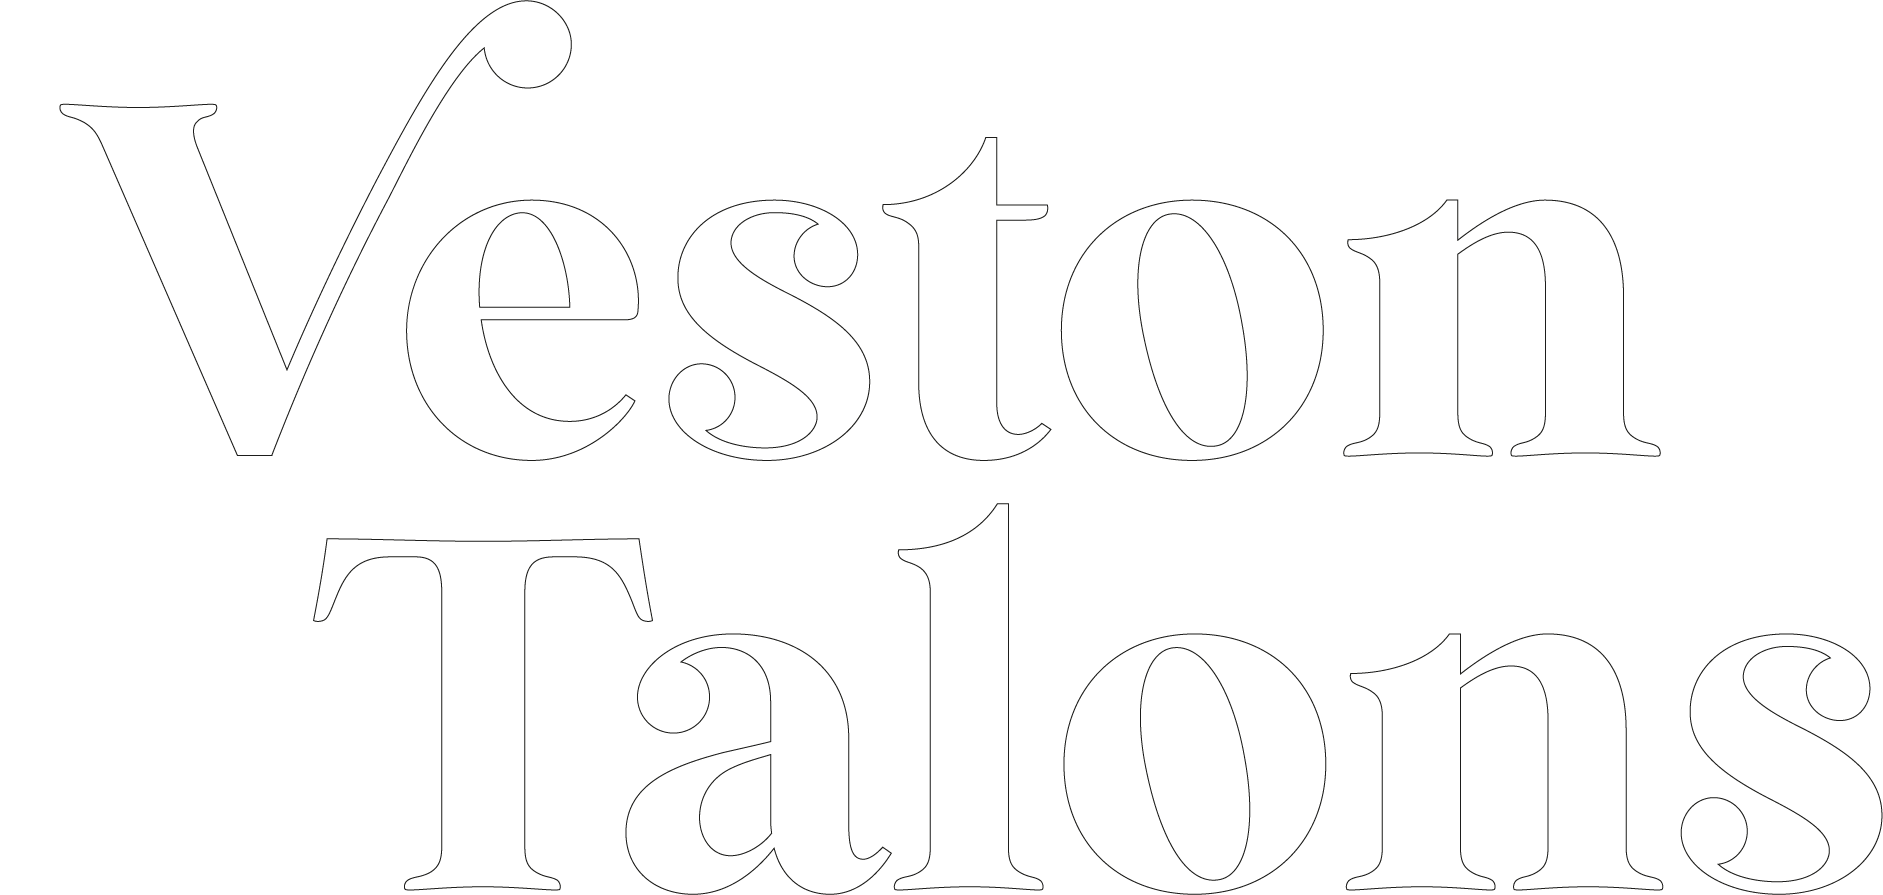 Veston & Talons